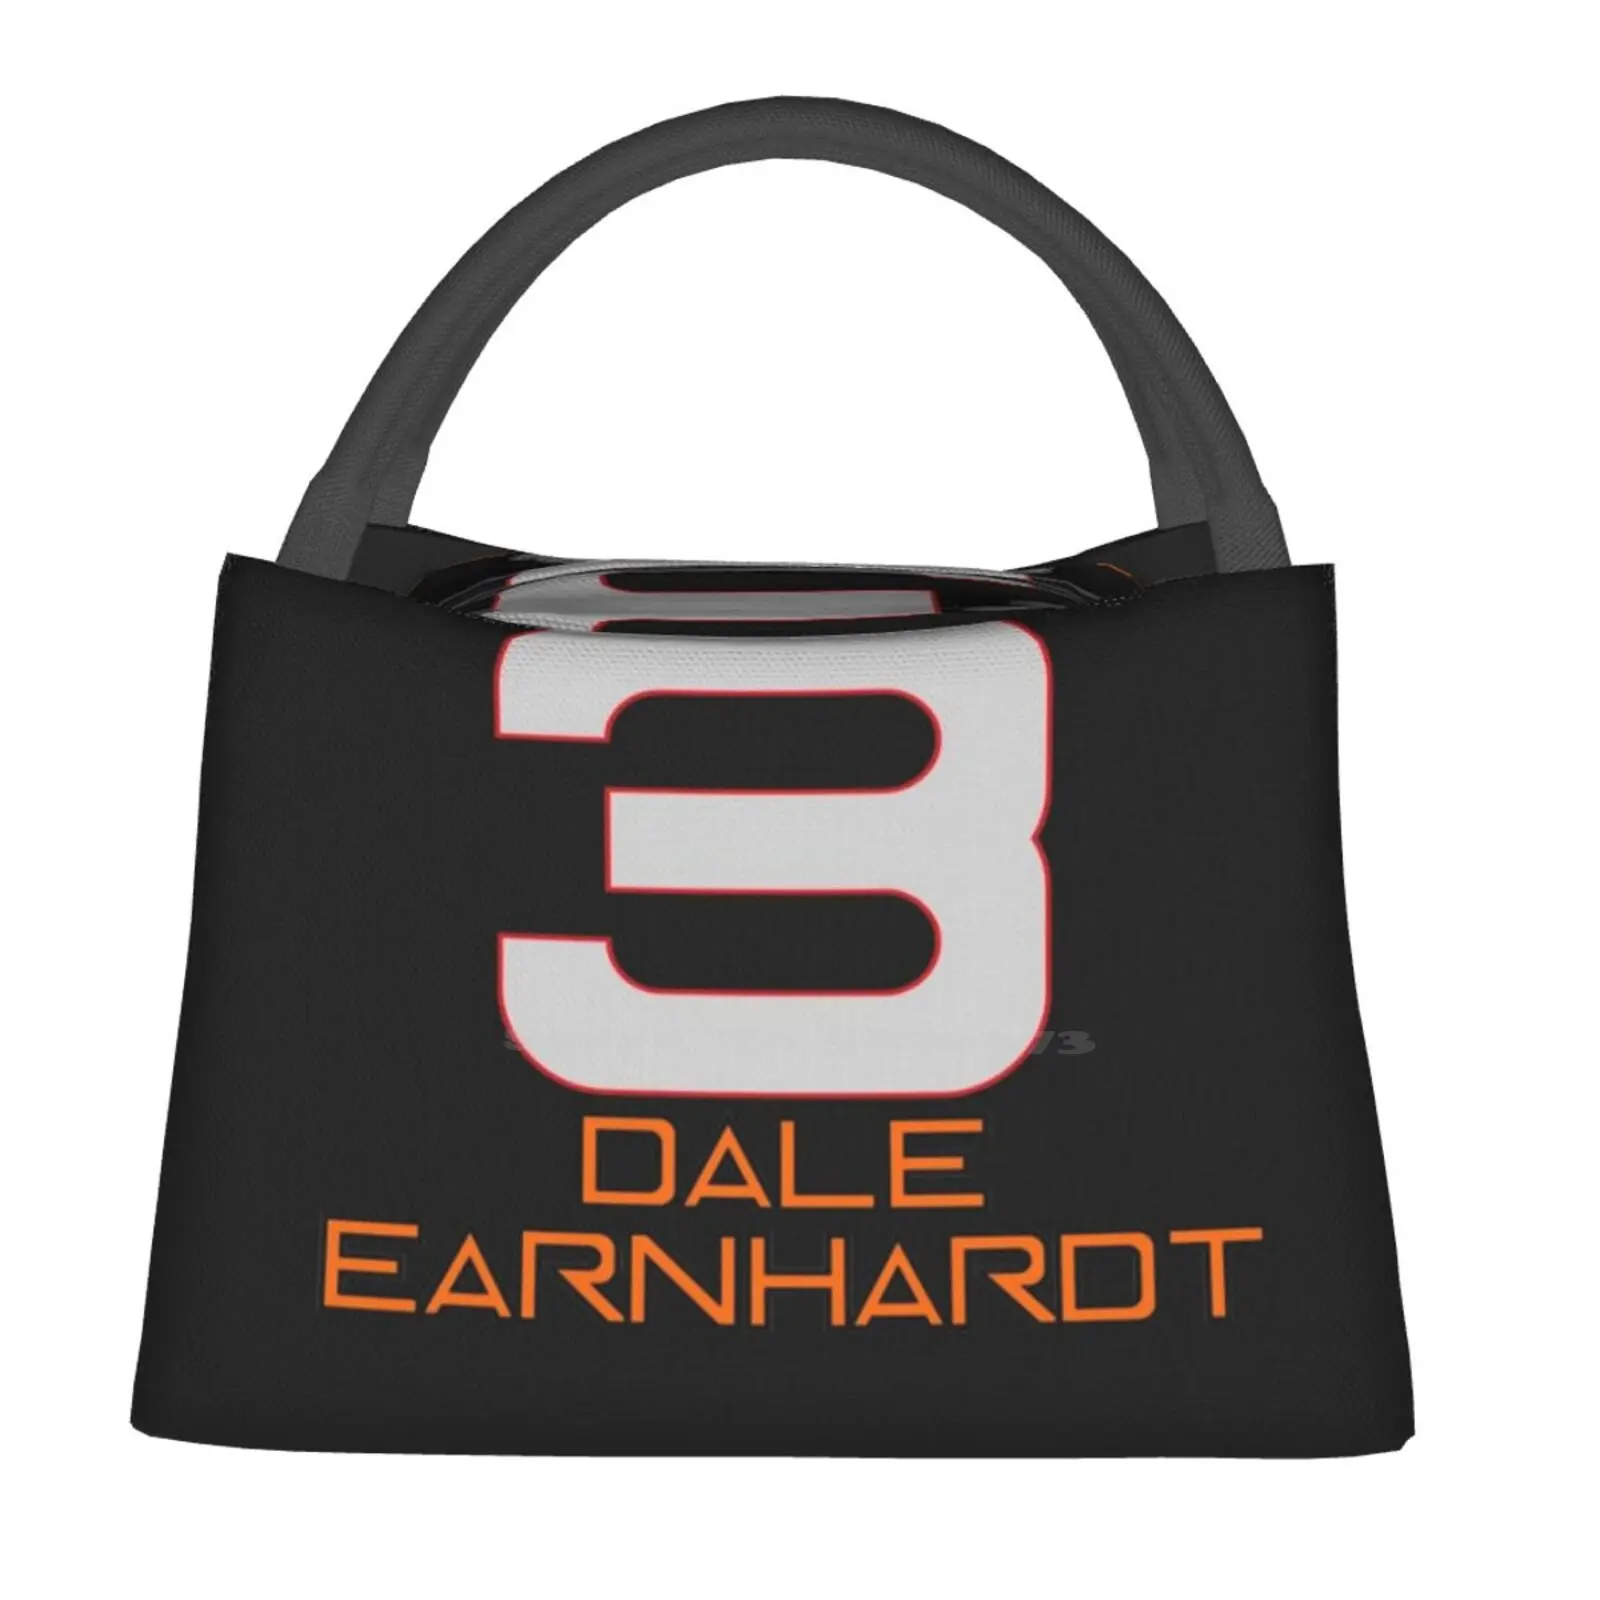 

Дейл амнхардт футболка термальный охладитель Изолированные сумки Зимние летние Дейл амнхардт Earnhardt Дейл гонки Дейл Jr 3 Jr 88 машины